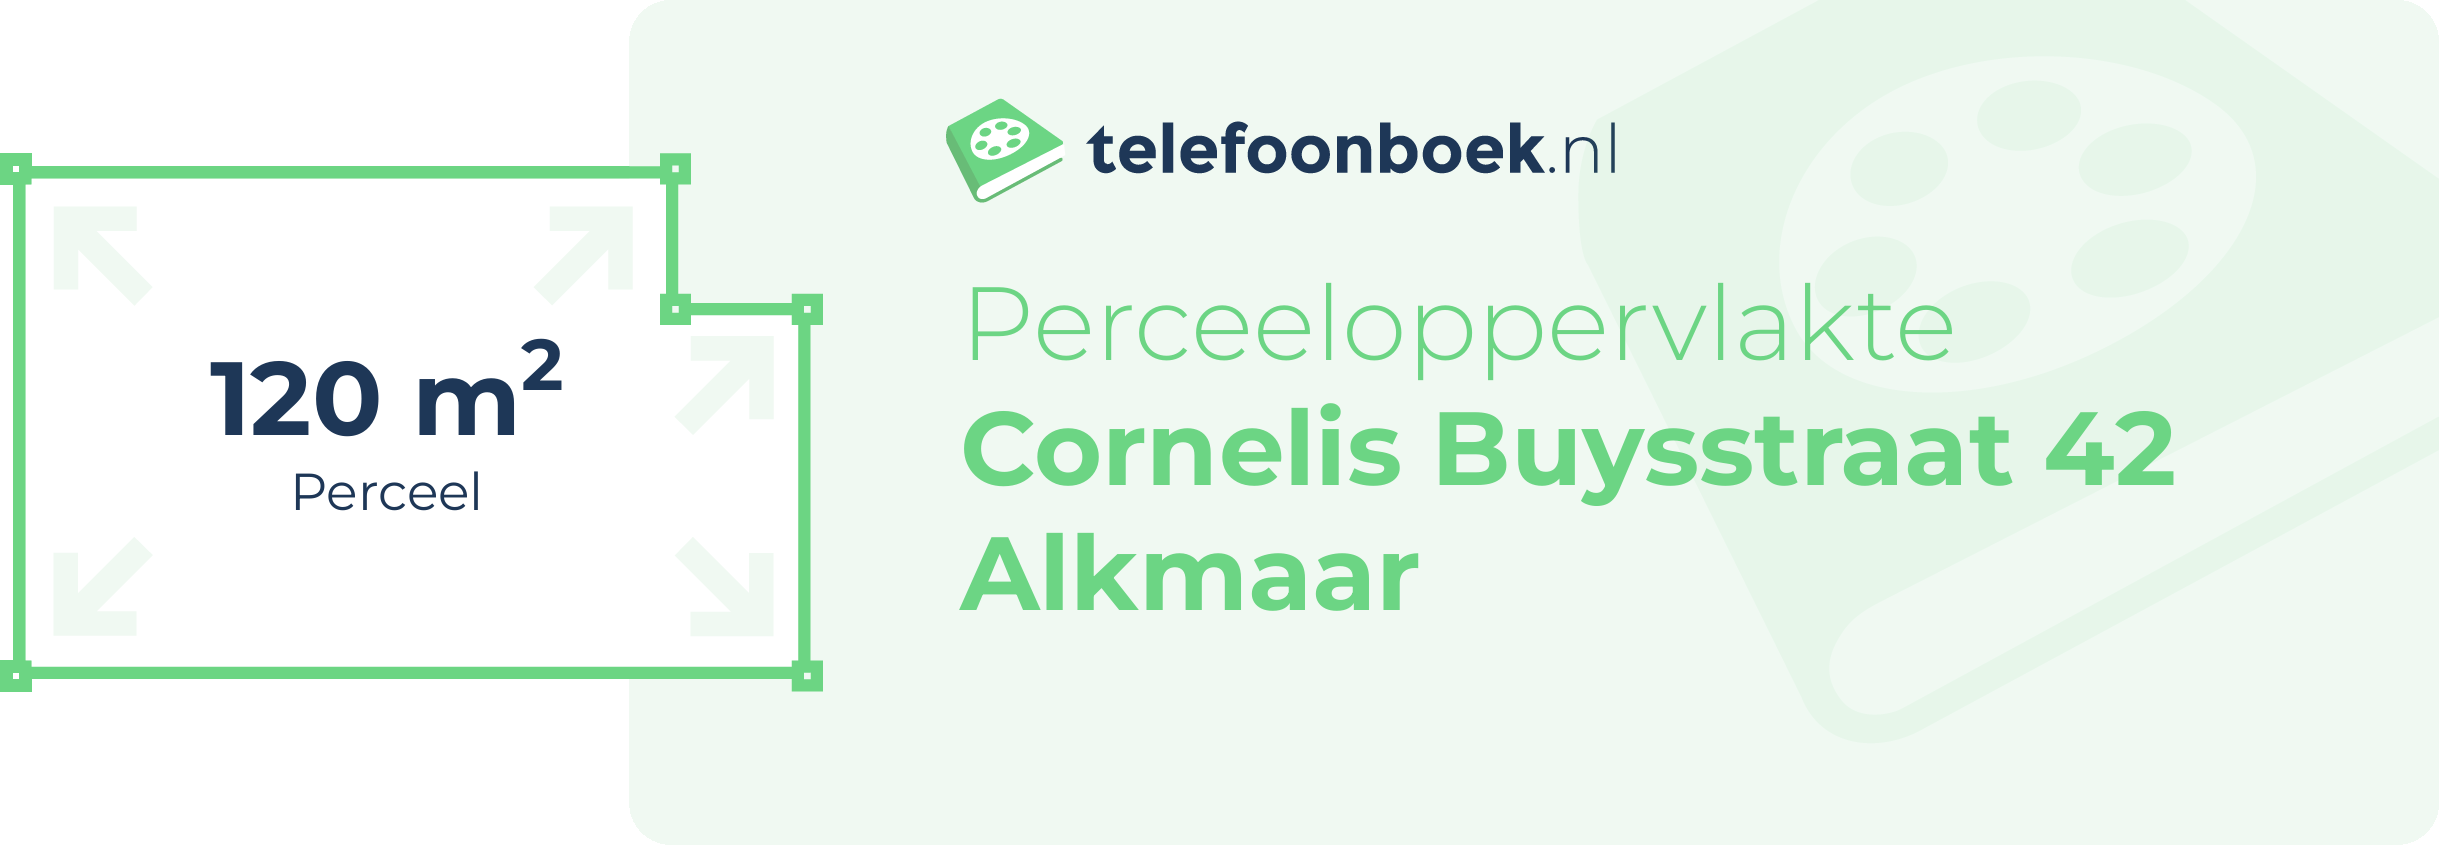 Perceeloppervlakte Cornelis Buysstraat 42 Alkmaar